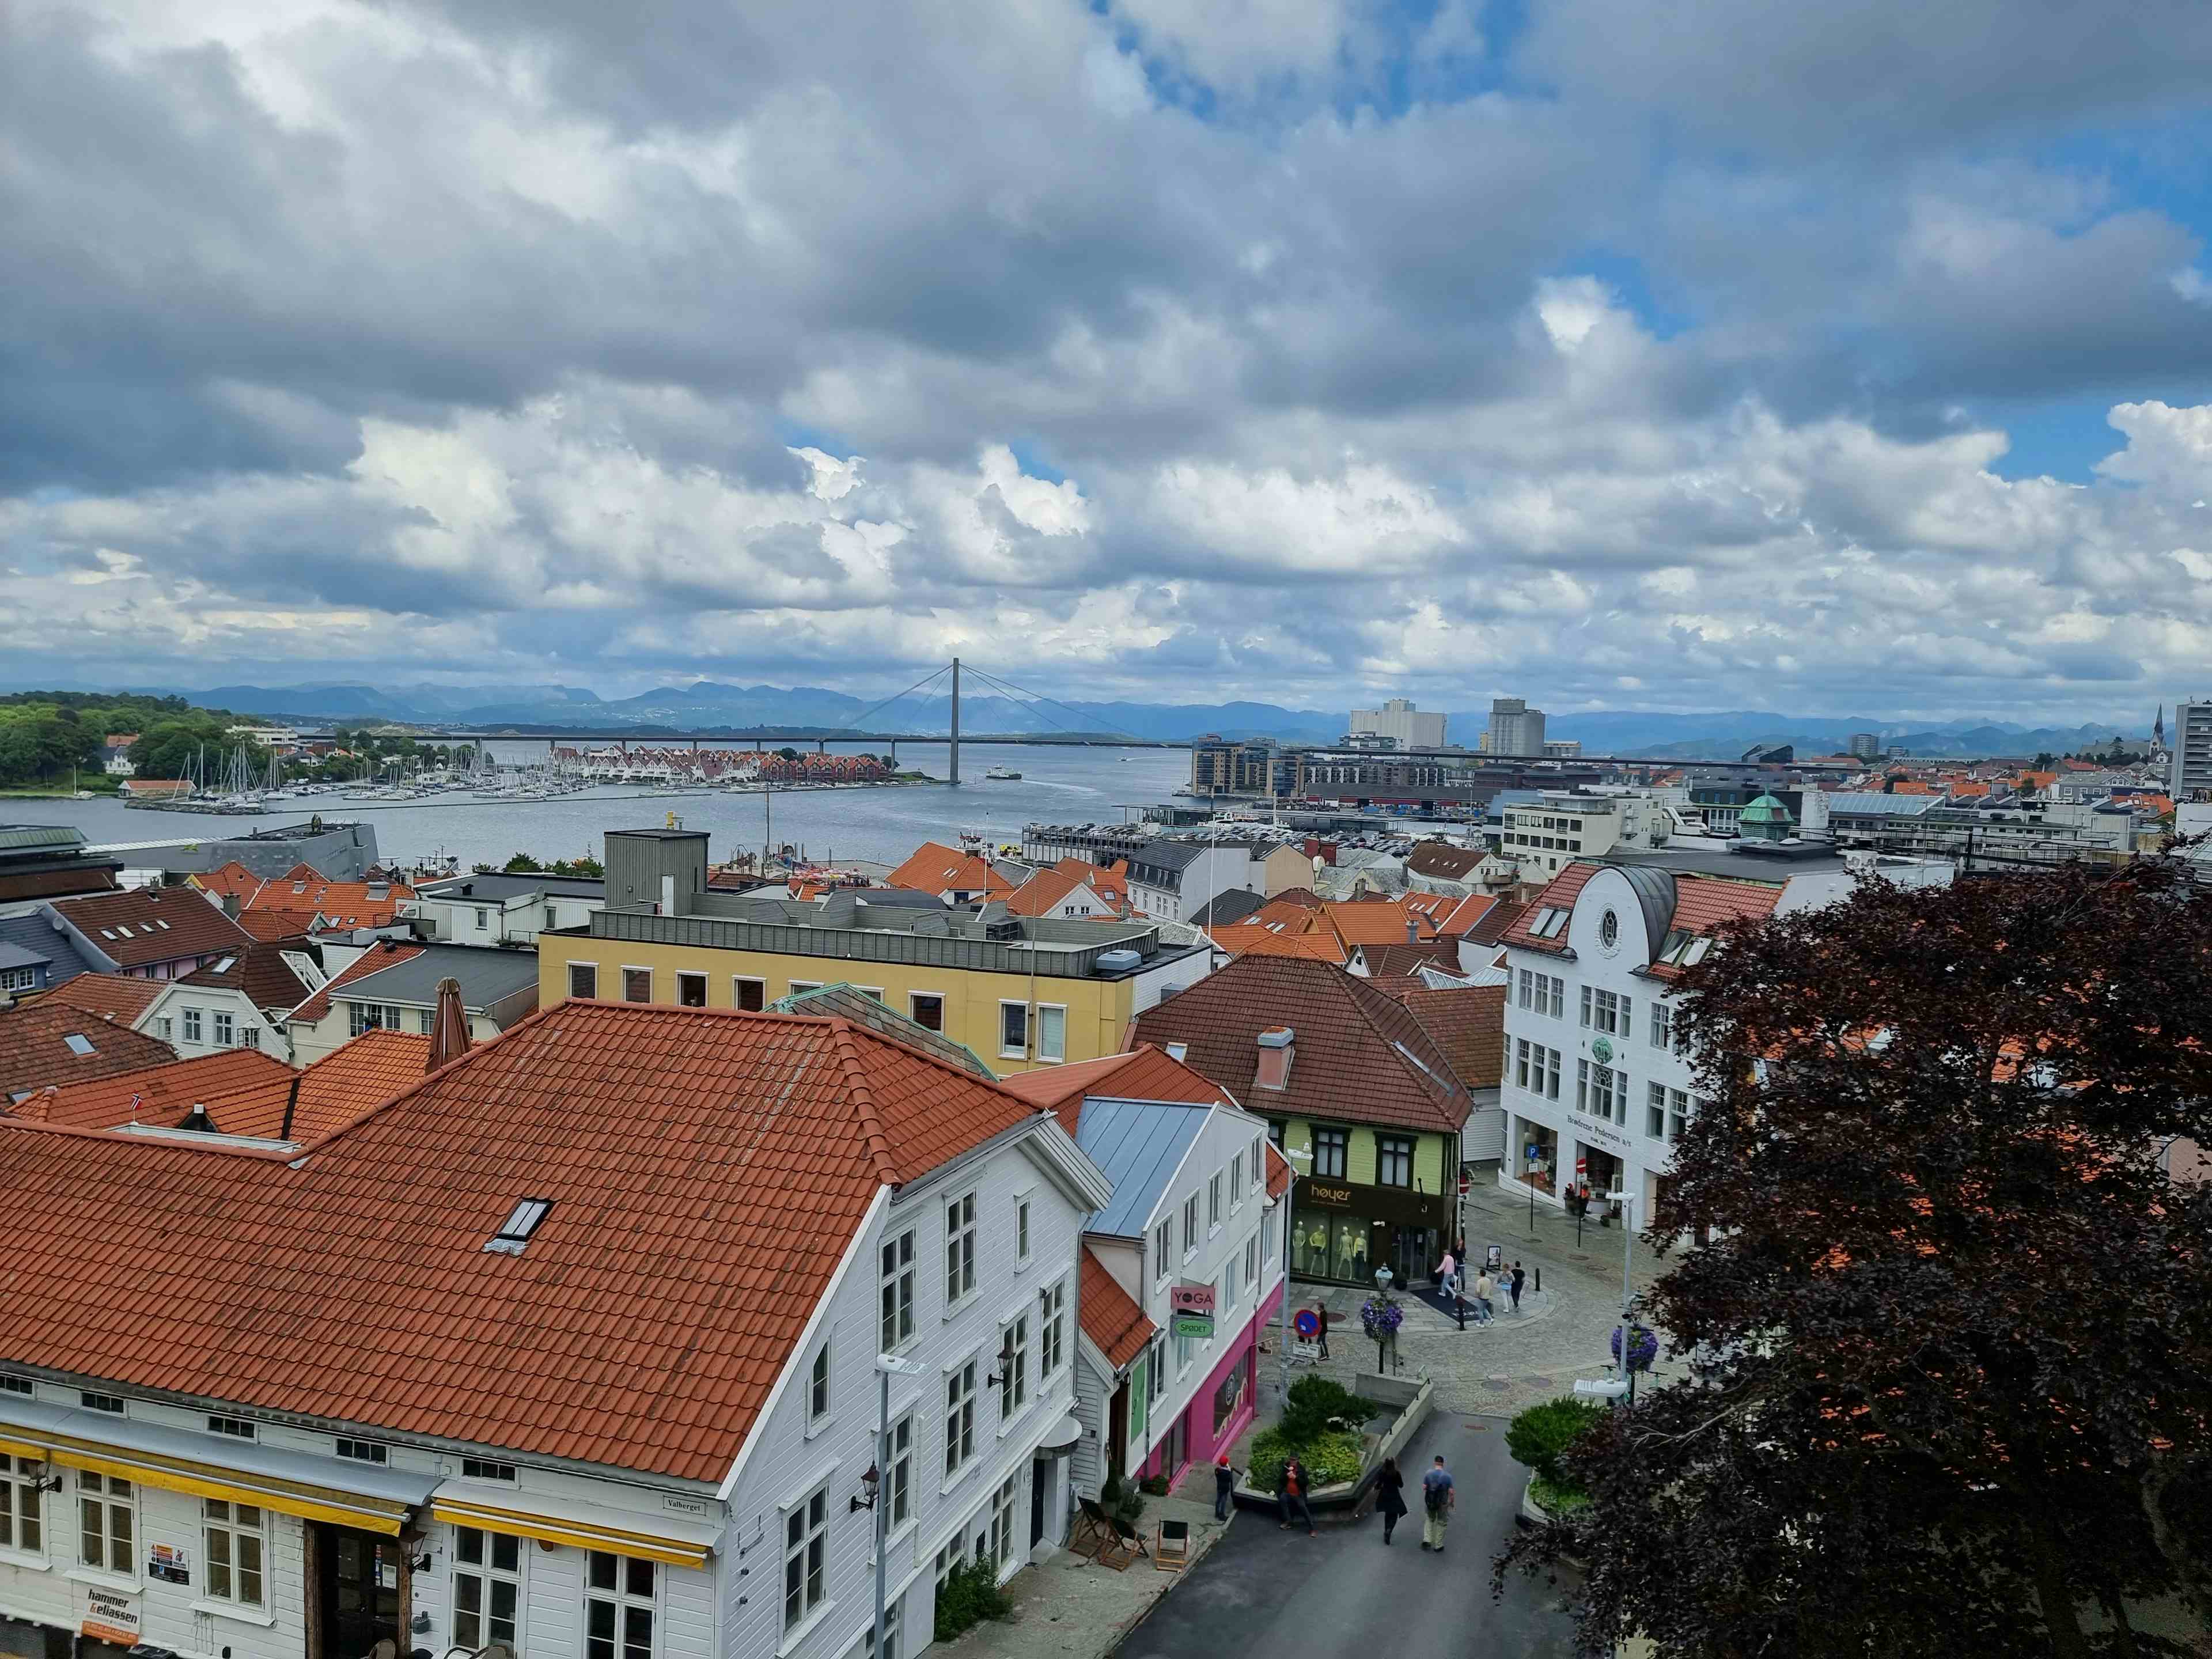 Stavangers sjøhusrekke i rødt, oransje og hvite hus med Valbergtårnet som ruver over like bak.